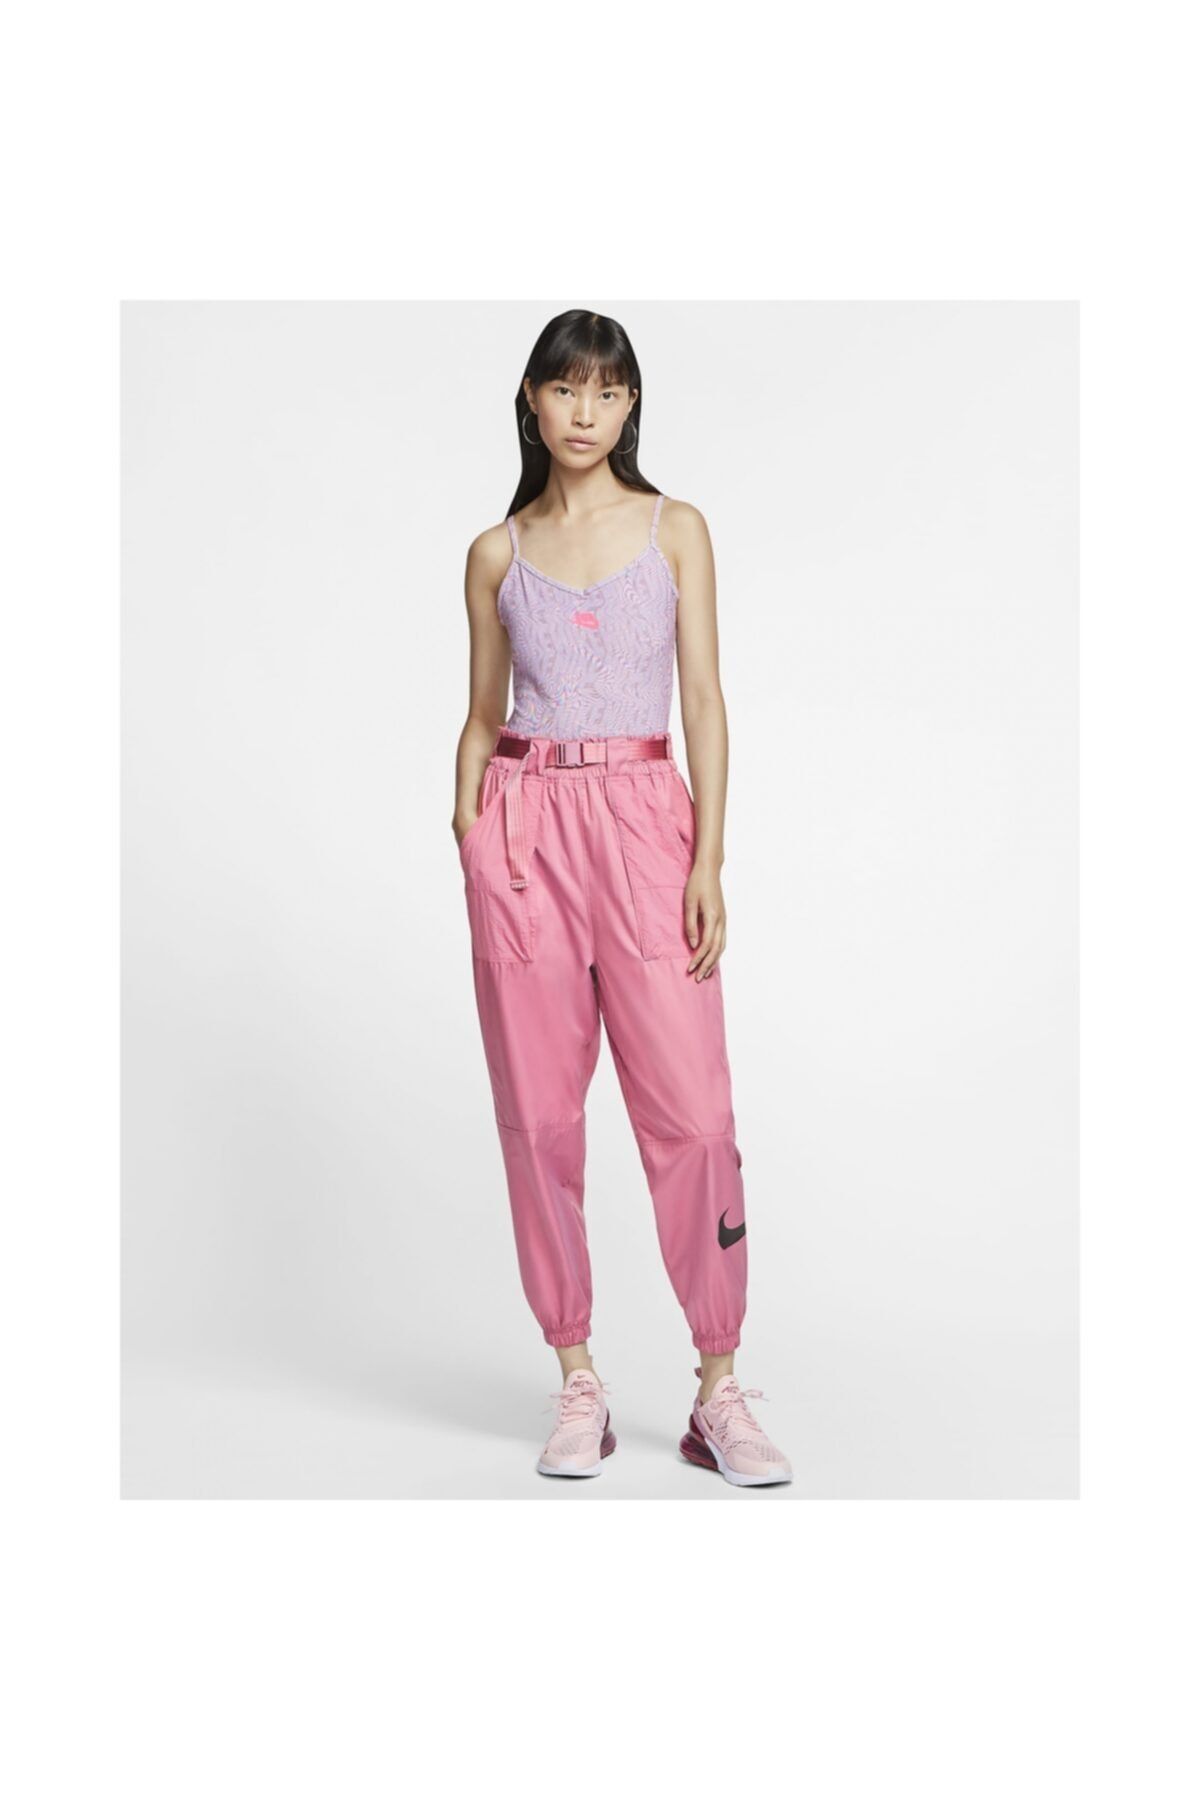 Nike Women's Pink Sportswear Printed Jumpsuit cw2508-512 - Trendyol